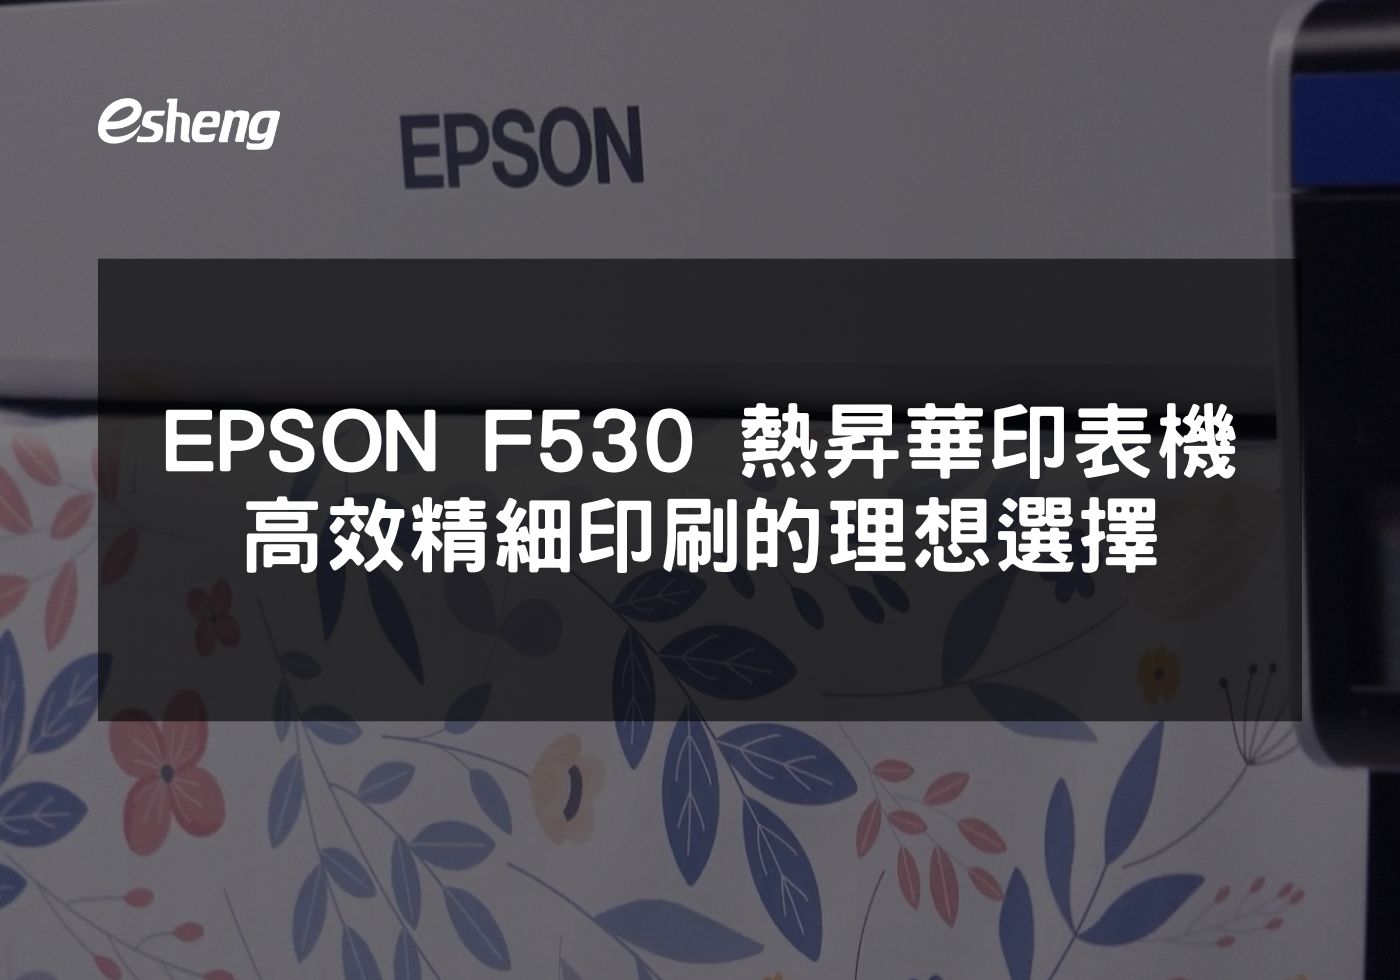 您目前正在查看 EPSON F530 熱昇華印表機 高效精細印刷的理想選擇